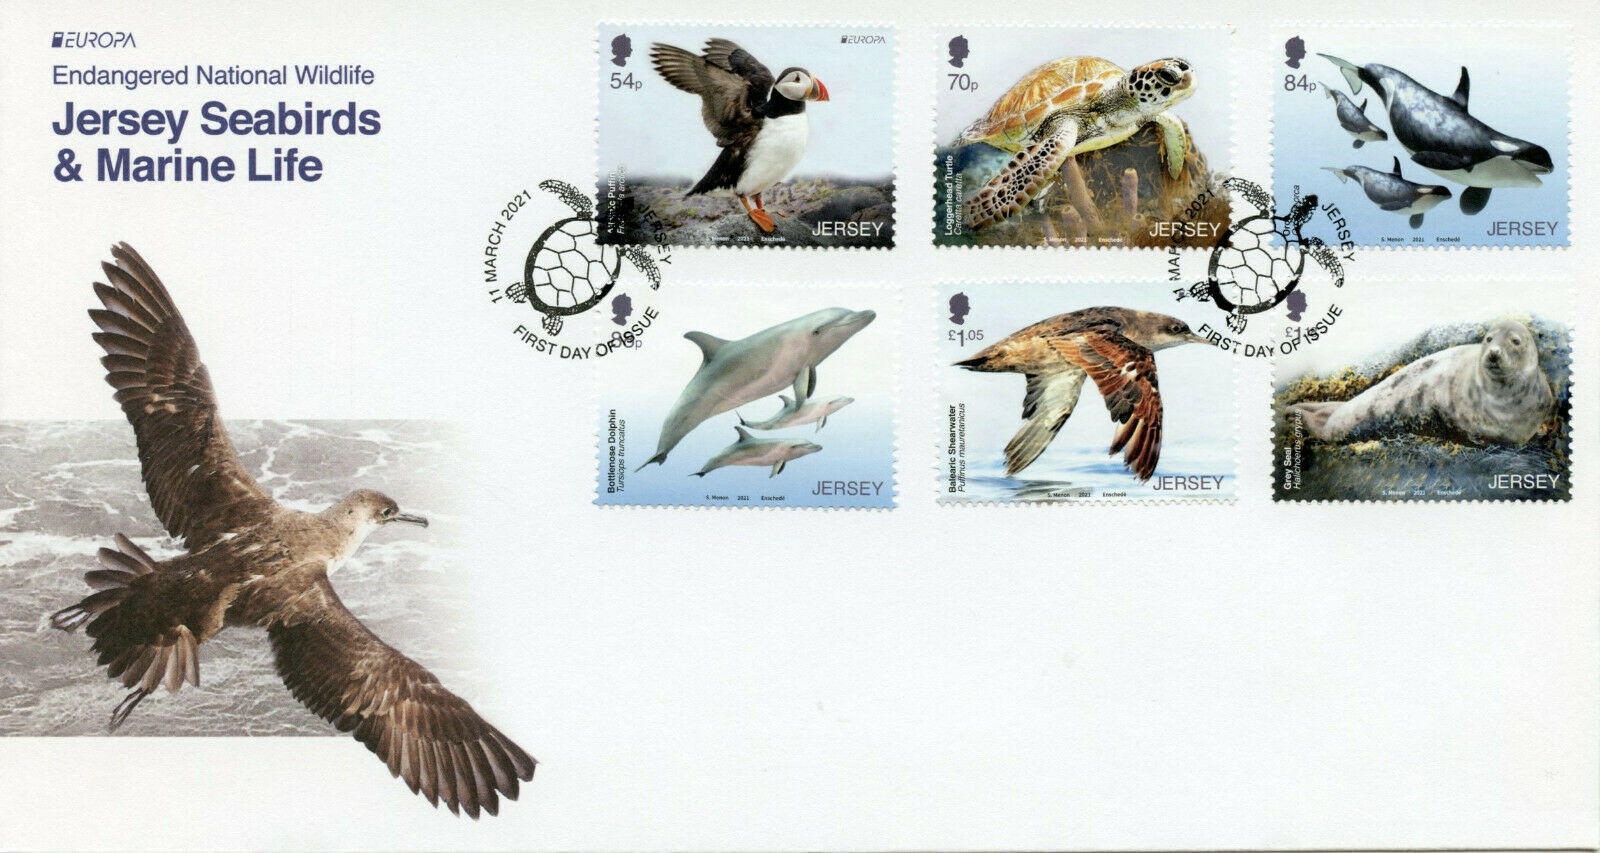 Jersey Europa Stamps 2021 FDC Endangered National Wildlife Birds Turtles 6v Set